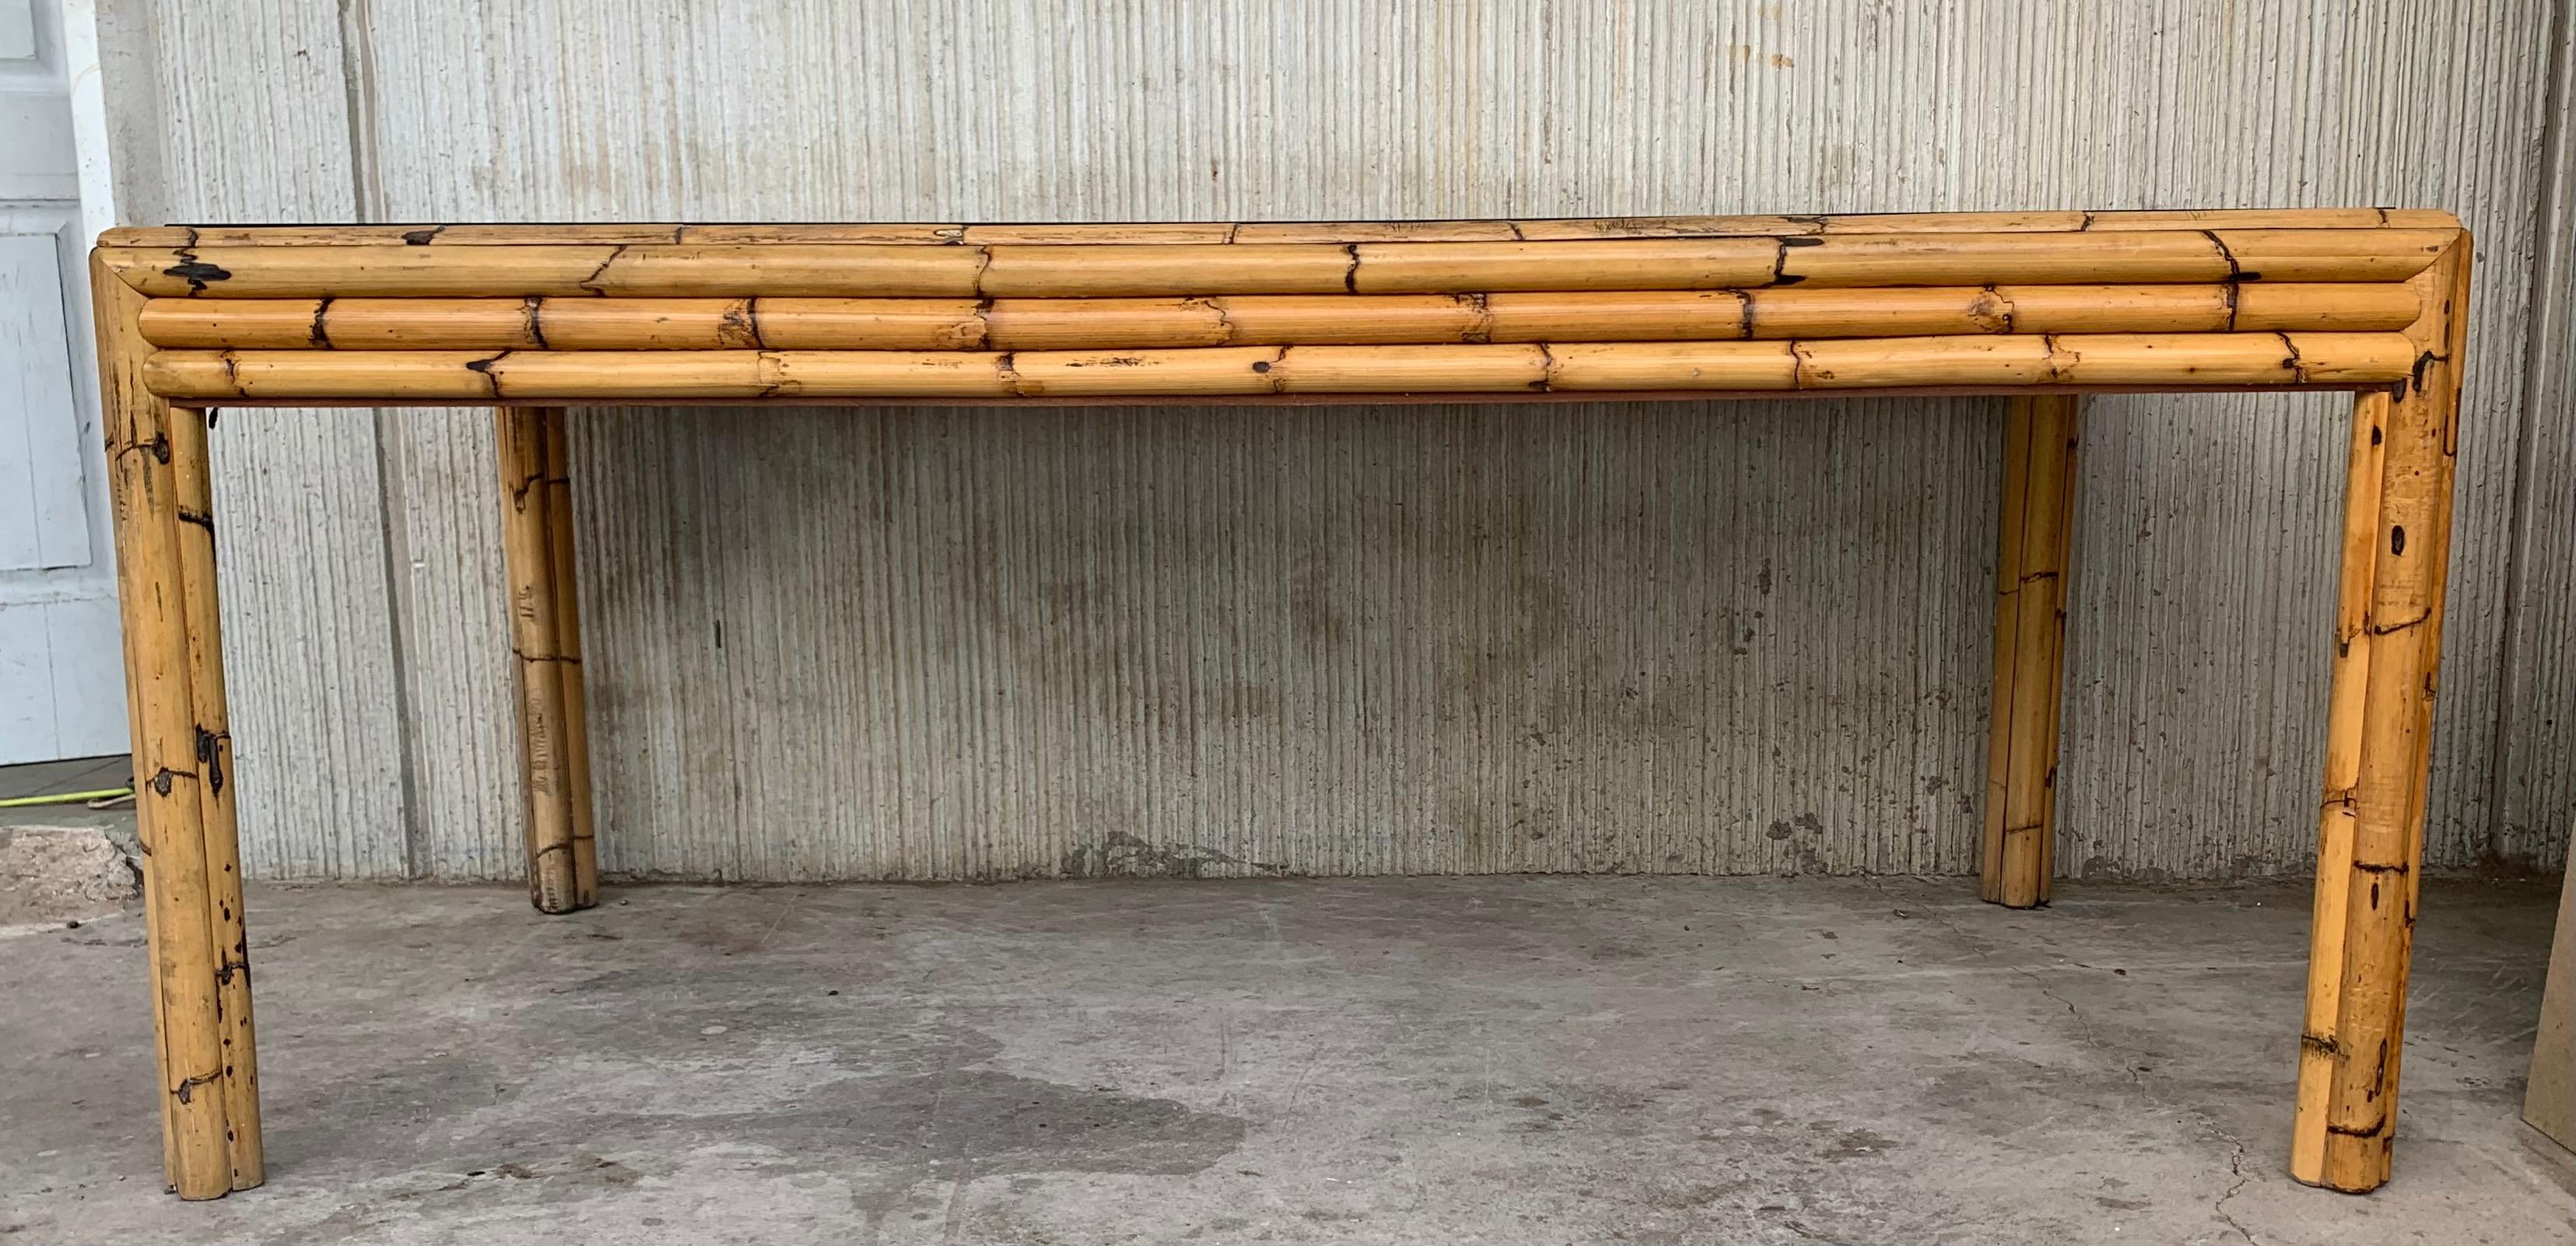 Spanischer Bambus-Glas-Esstisch aus den 1980er Jahren mit Tischplatte aus Rauchglas Dicke und kräftige Bambushalme bieten ausreichend Halt für eine Tischplatte aus dunklem Rauchglas.

Höhe vom Boden bis zum Tisch: 26.96in.
    